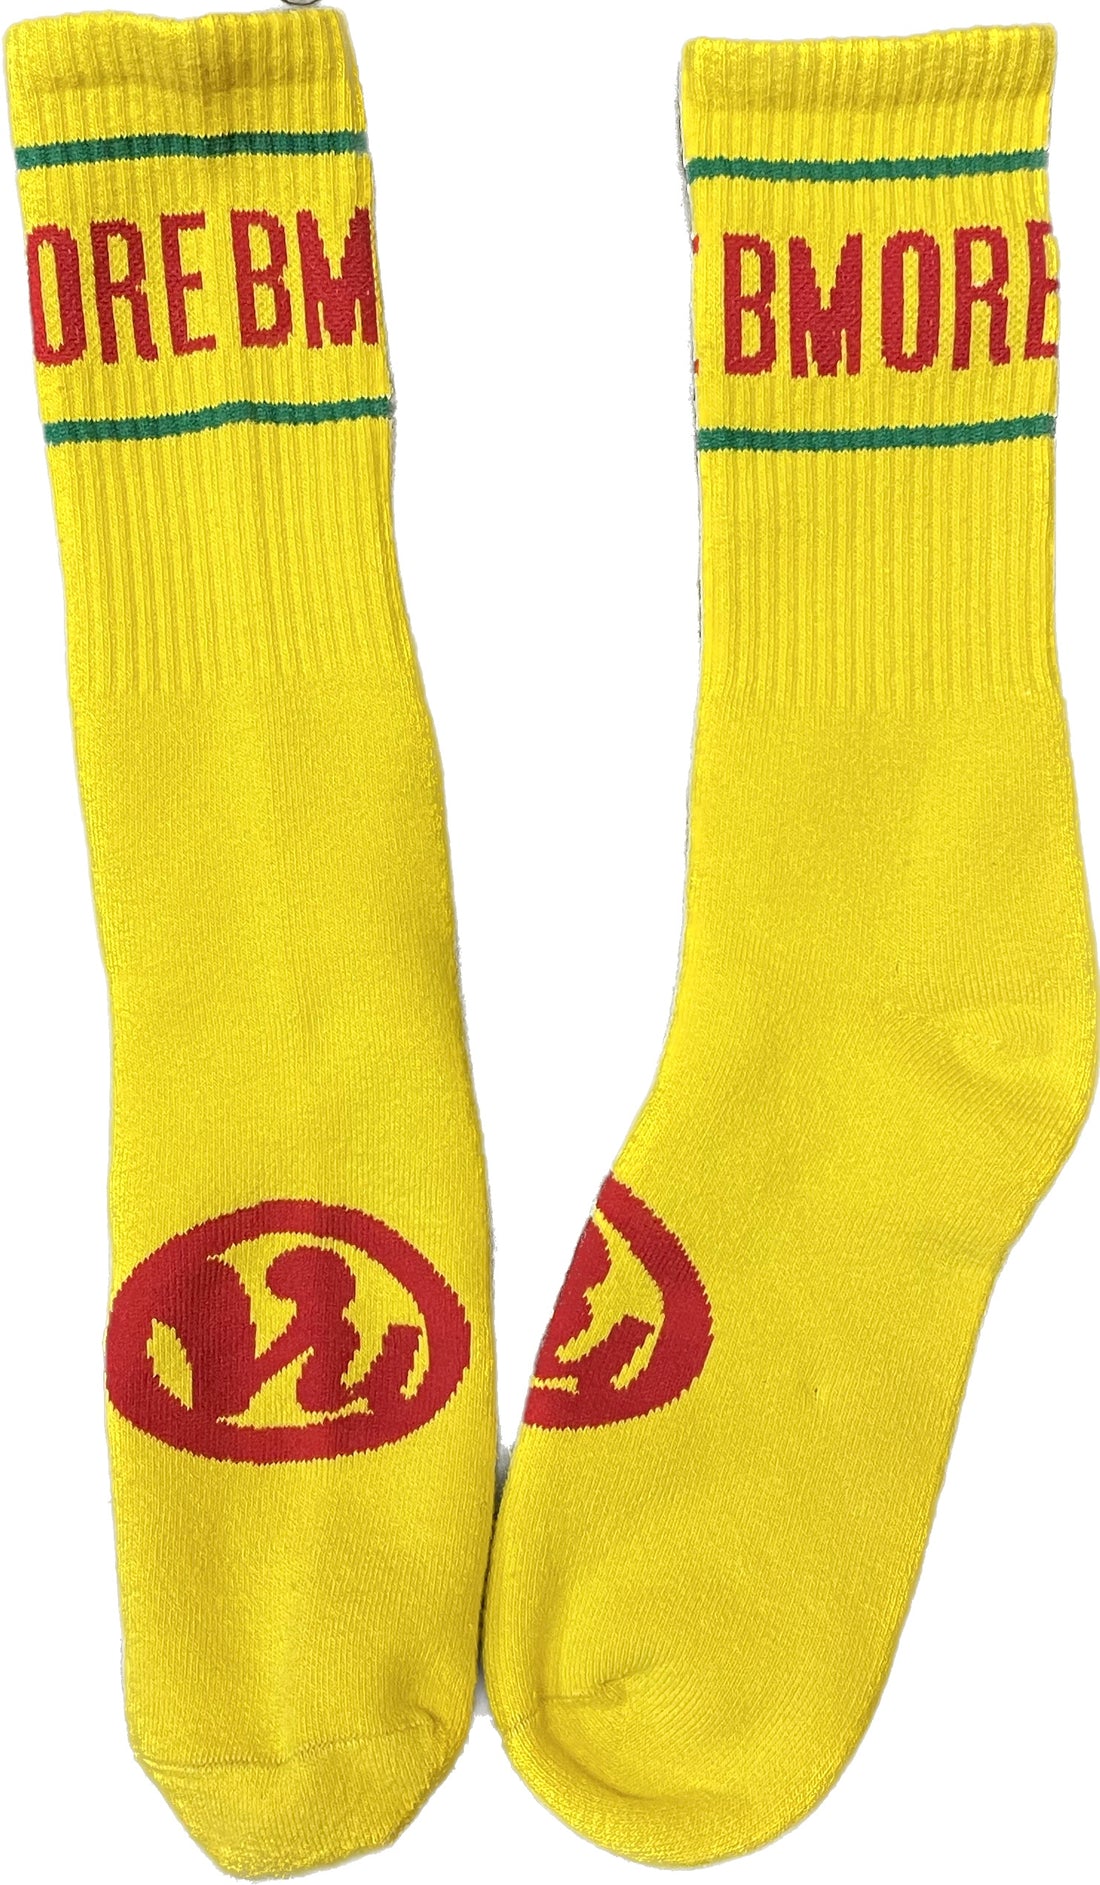 Bmore Socks (Yellow)